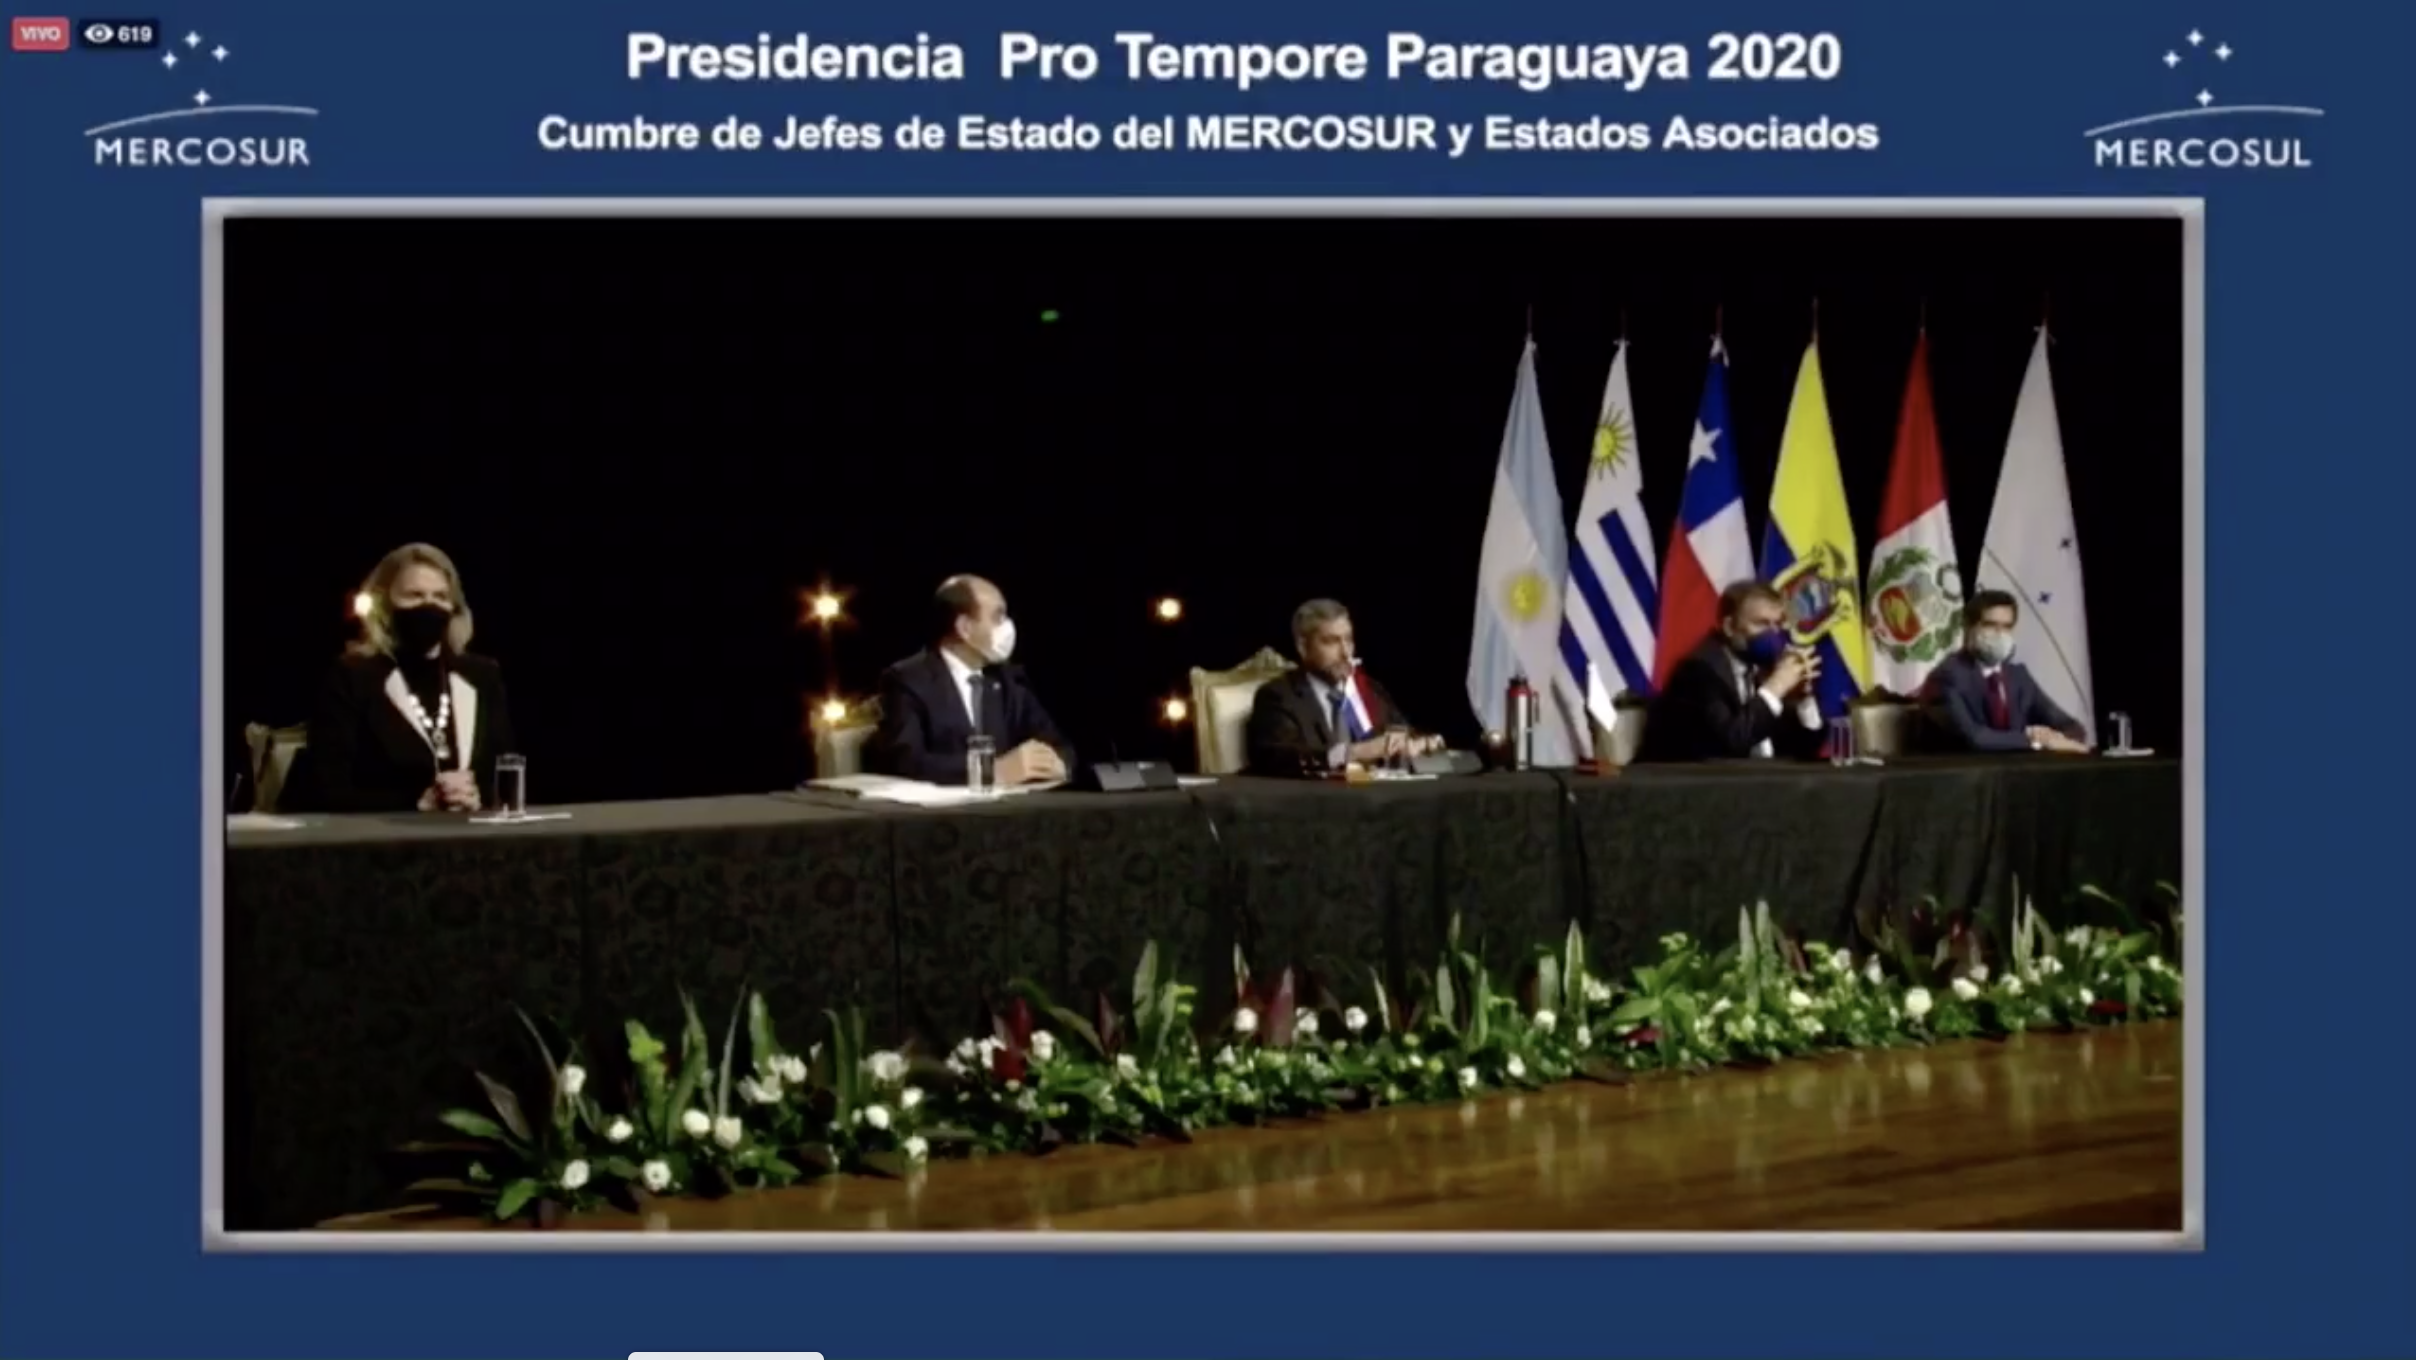 Print de pantalla de la cumbre virtual de poderes del Mercosur.